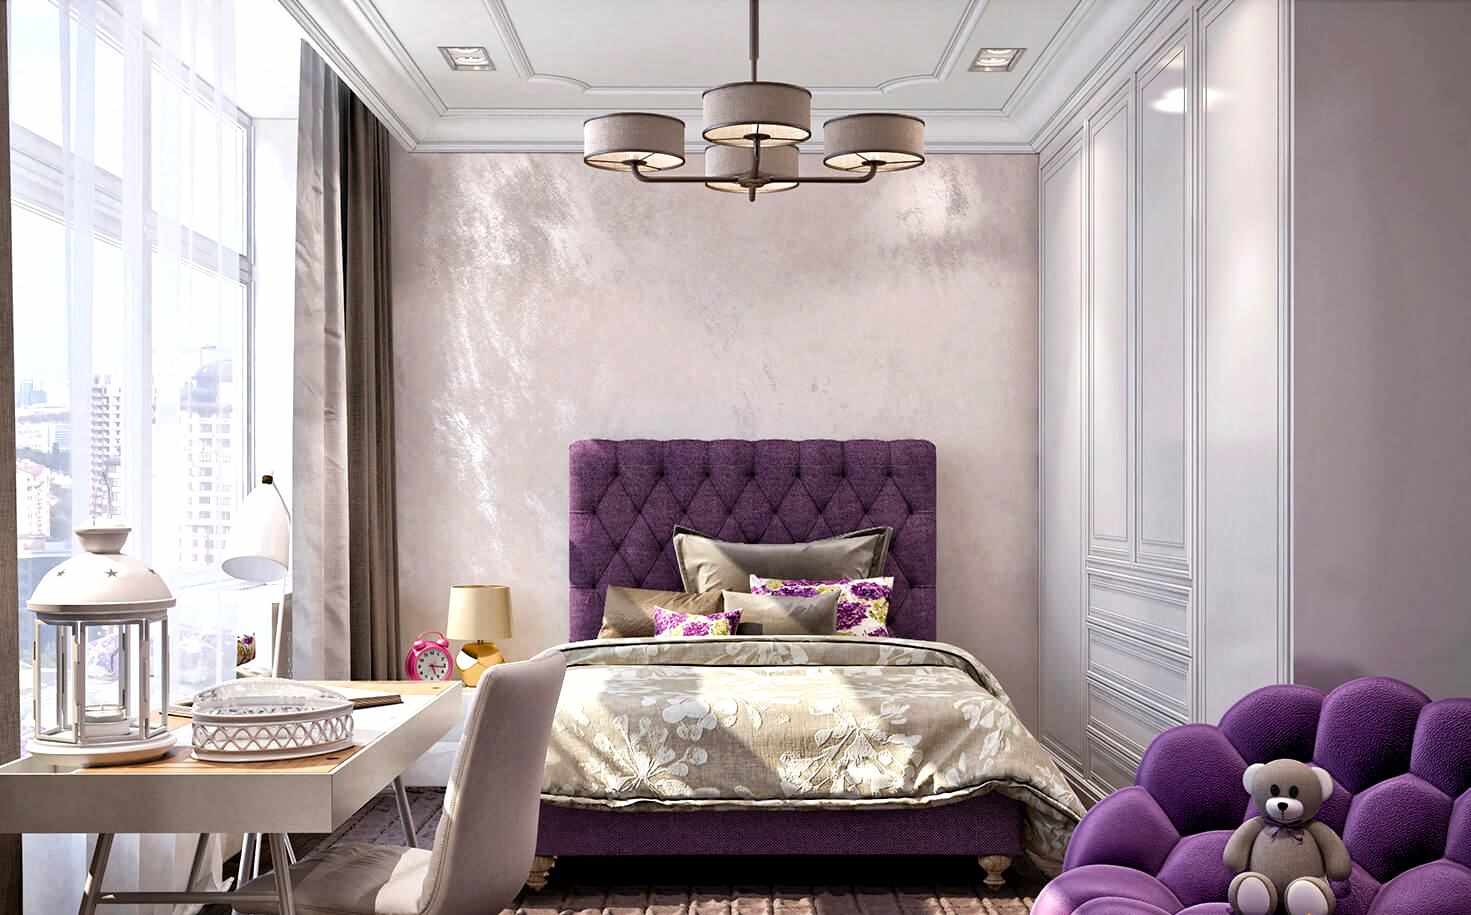 mga pagpipilian sa lilac bedroom